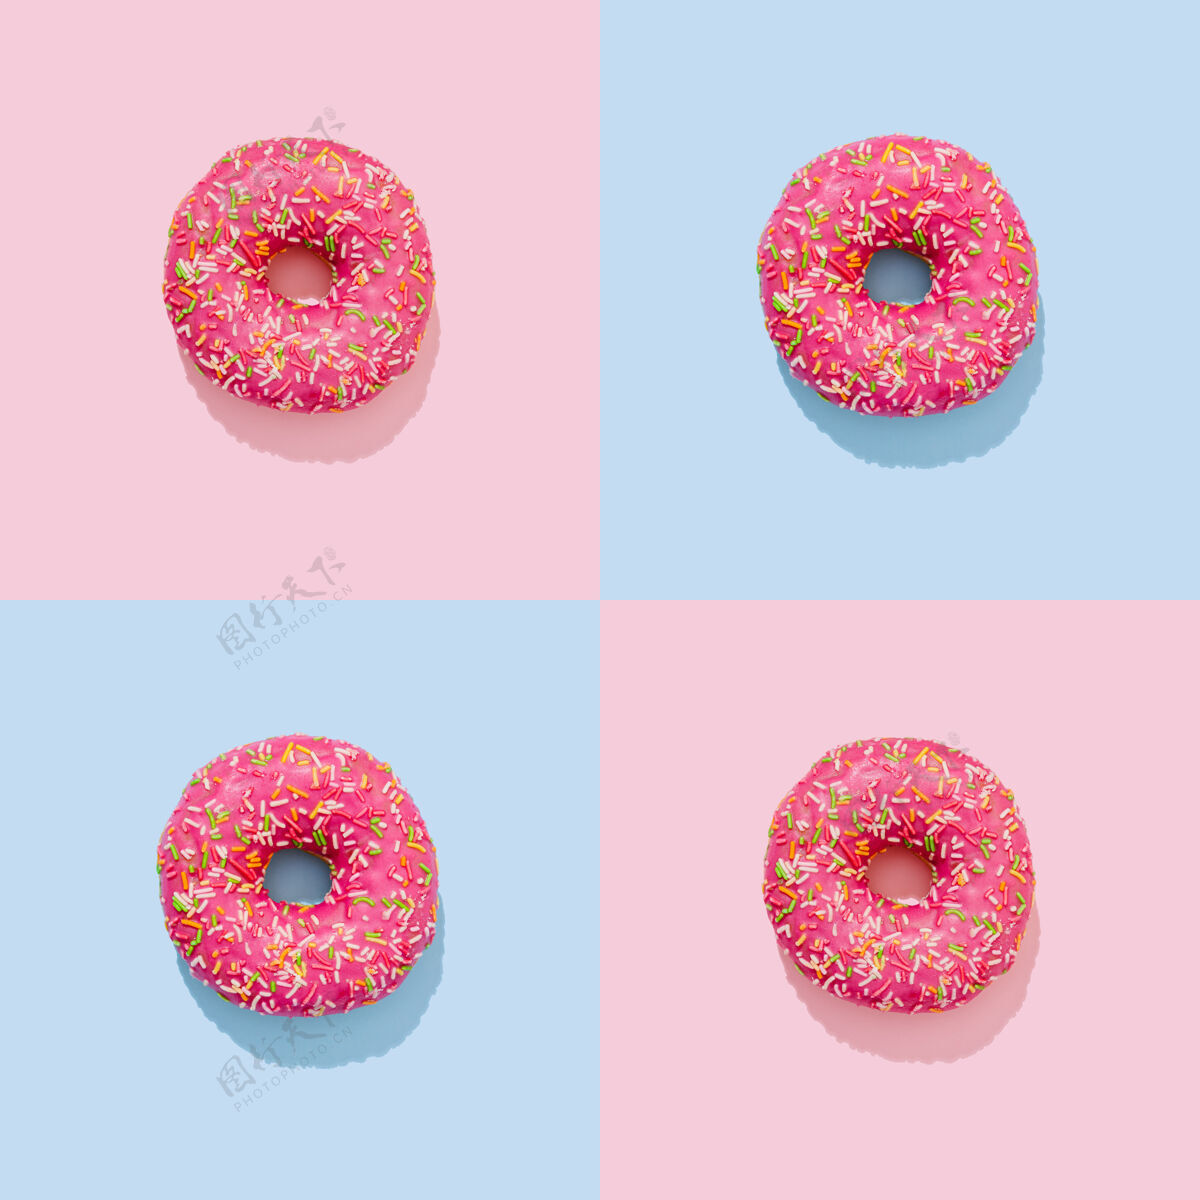 五颜六色粉红色釉面上的油炸圈饼 带有波普艺术风格的彩色喷溅洒水圆形釉面